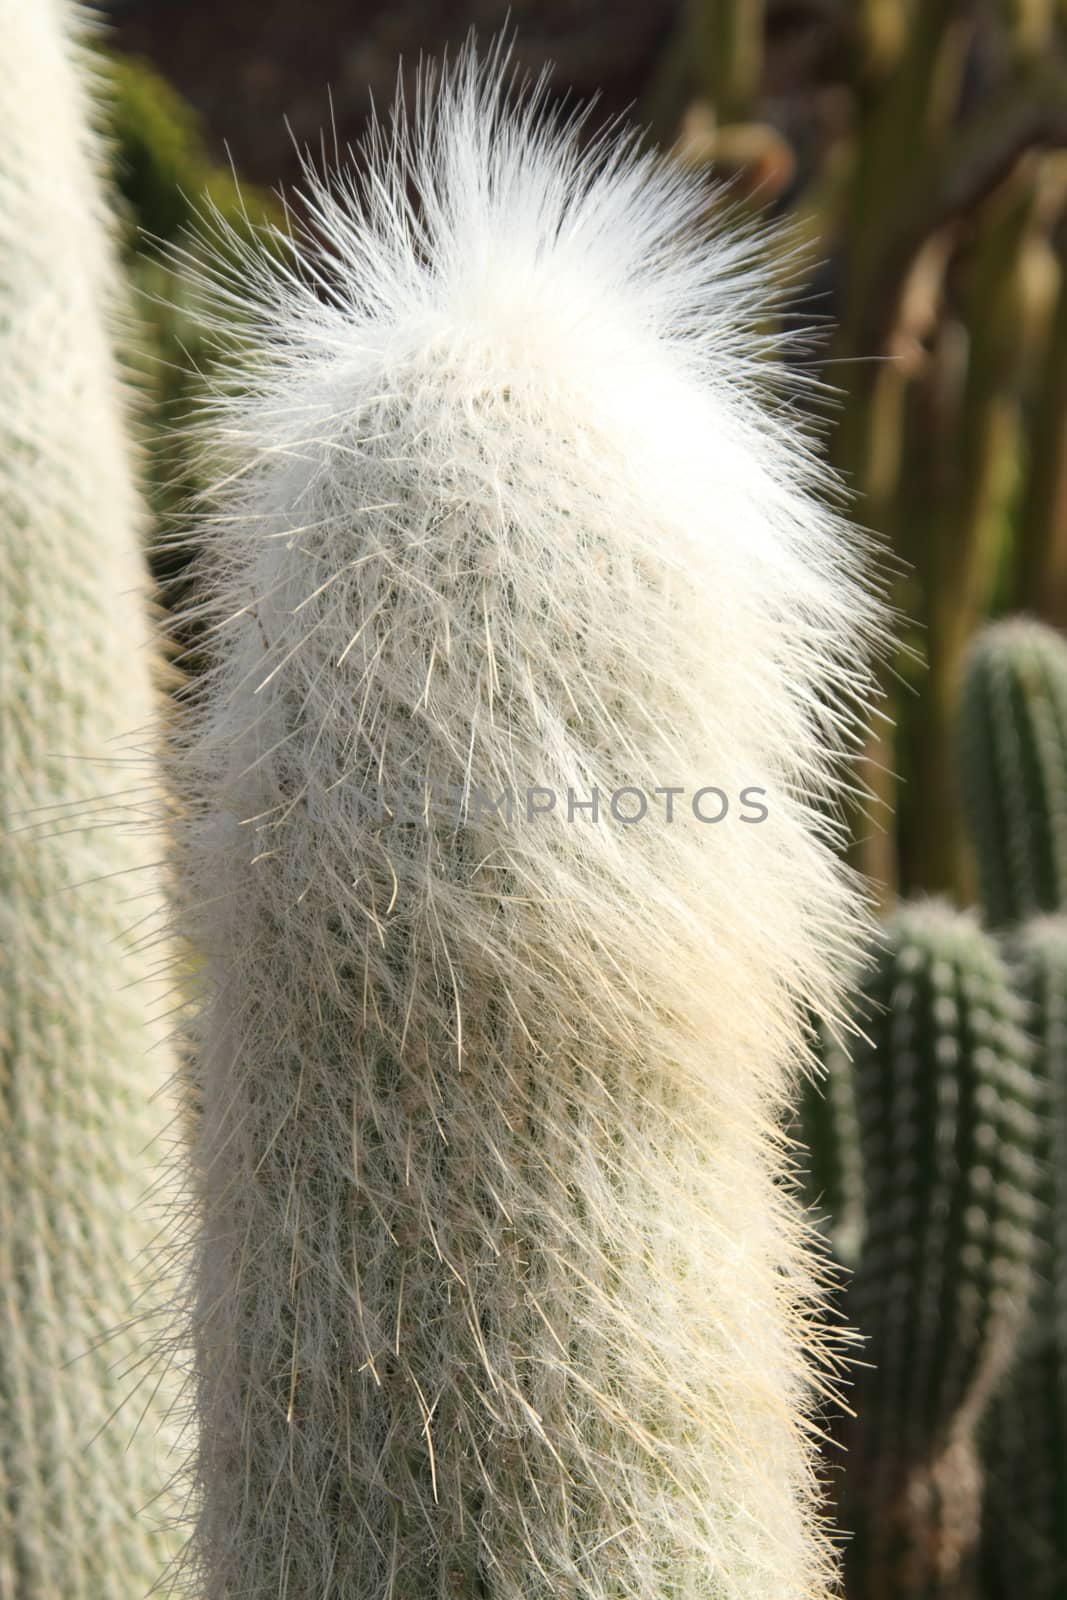 Cephalocereus senelis cactus